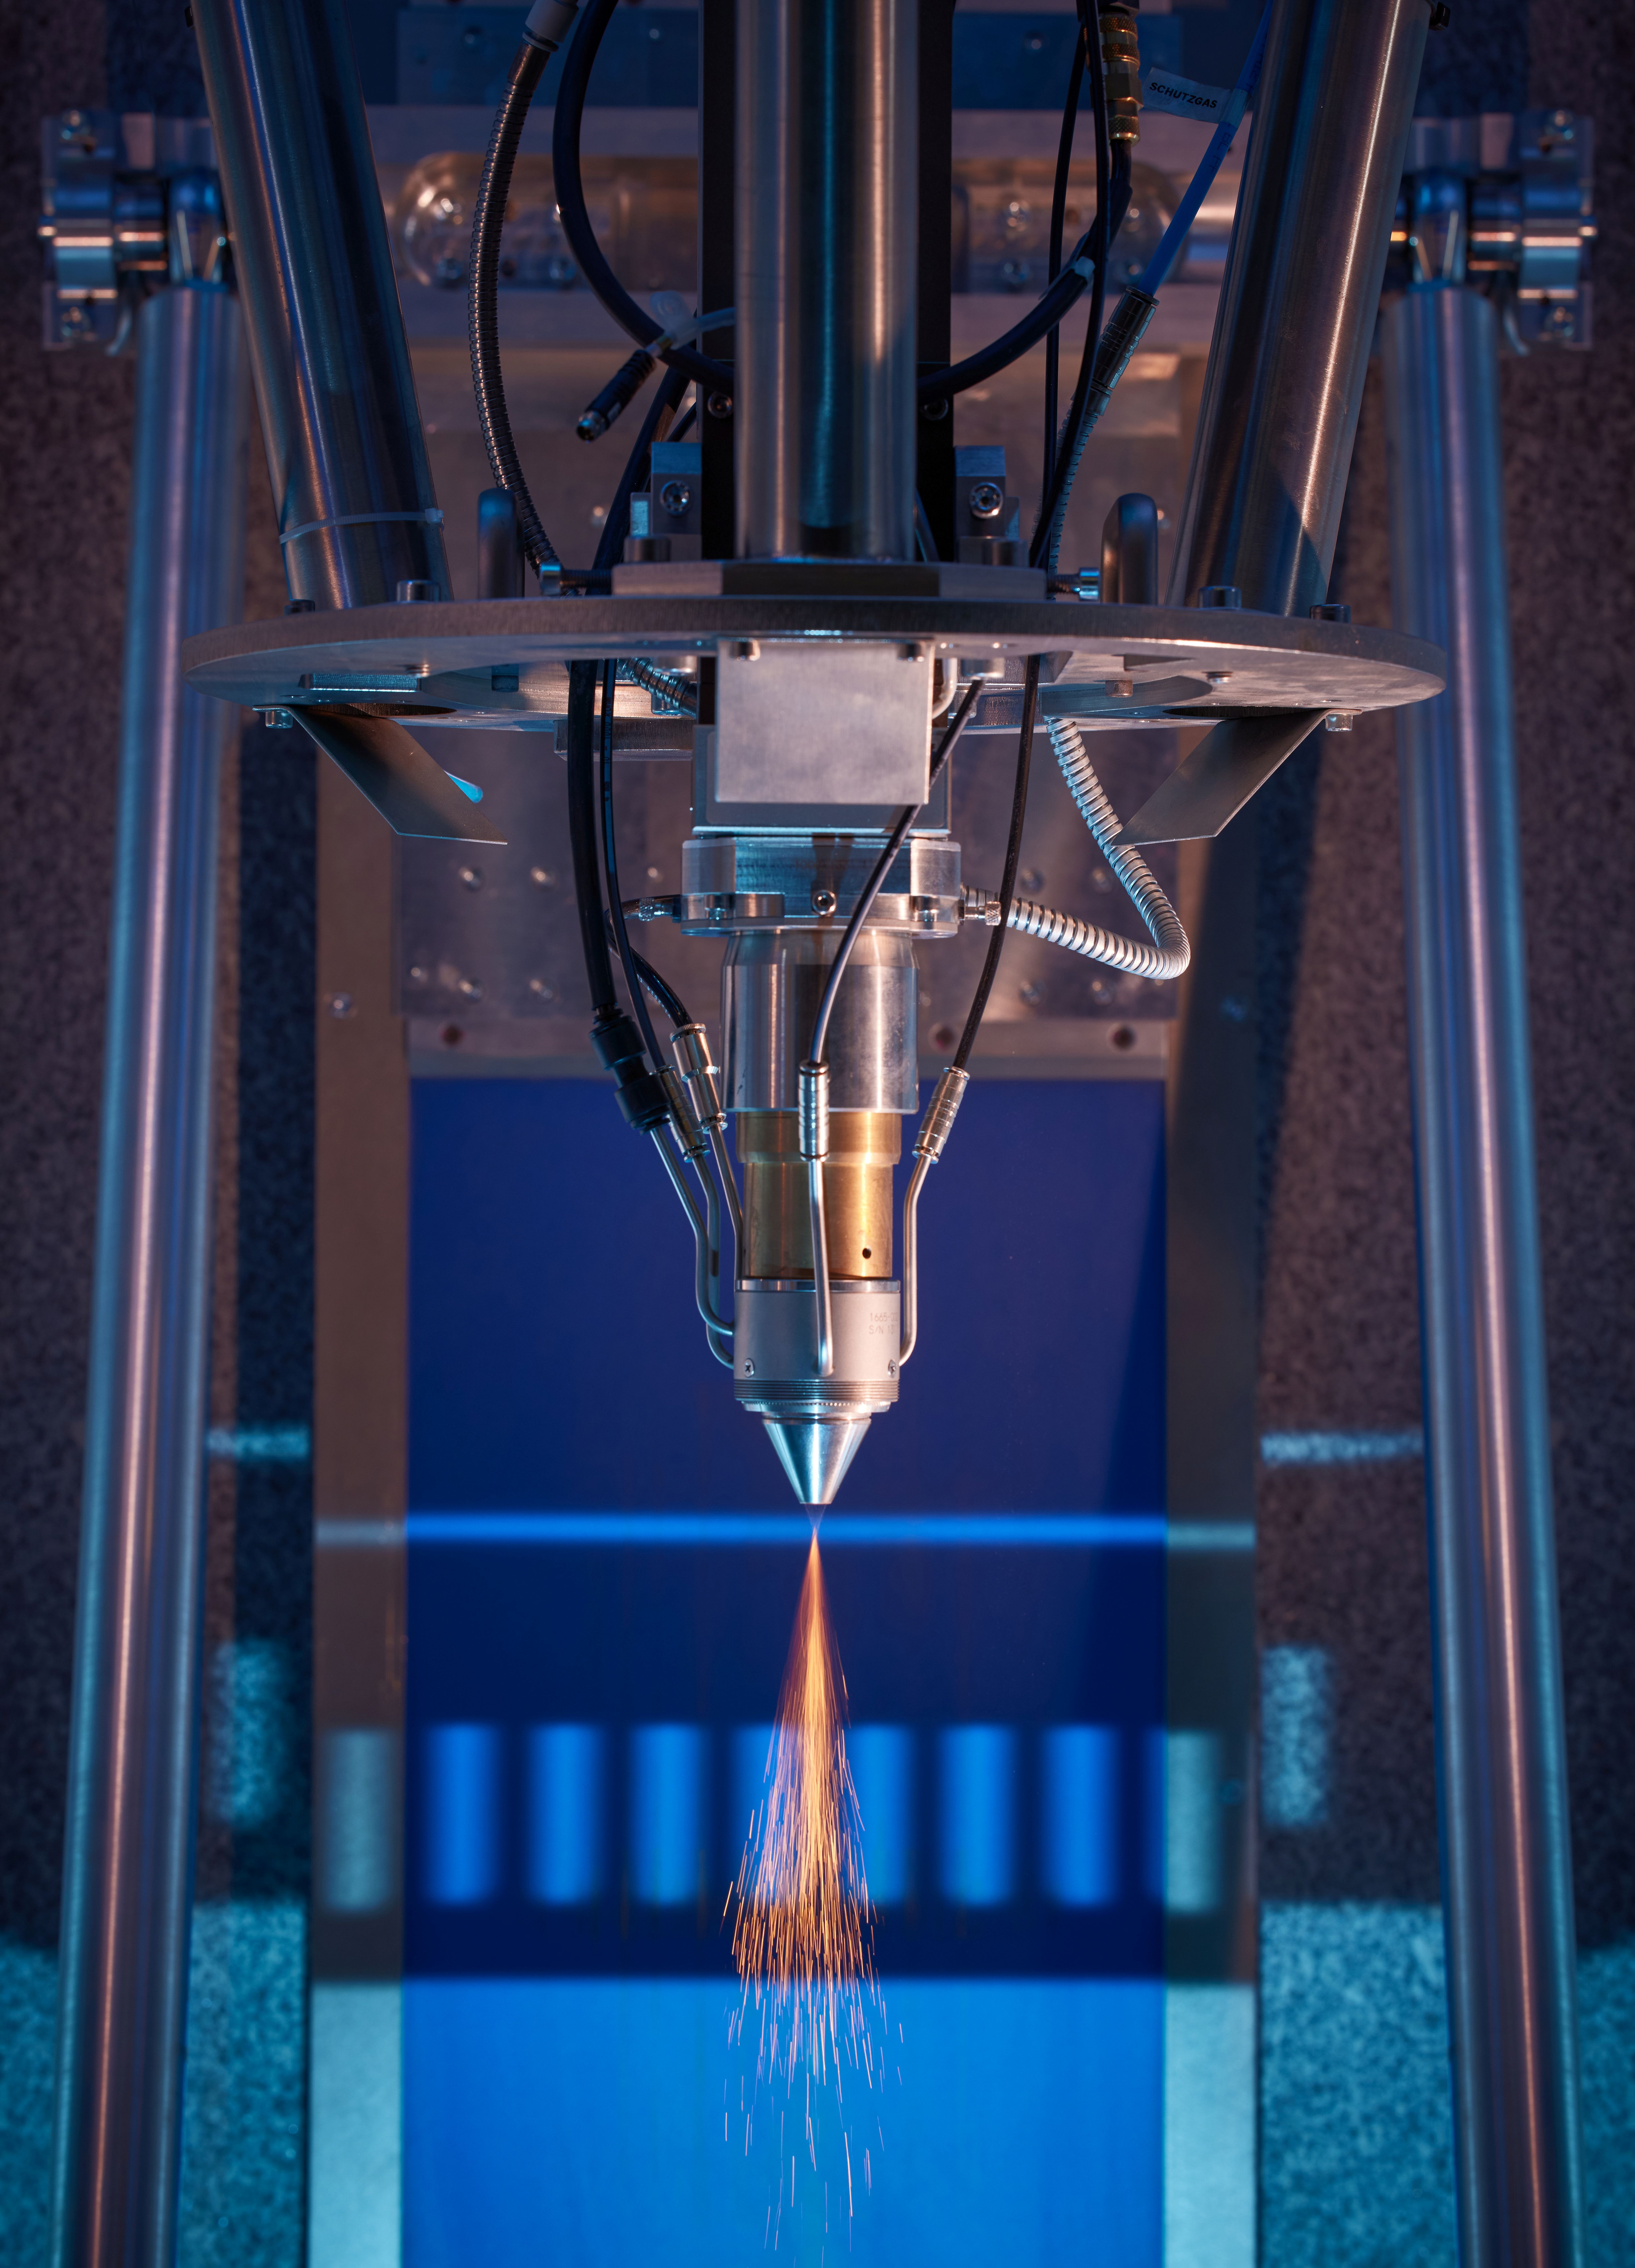 Forschende des Fraunhofer ILT fertigen Raumfahrtkomponenten additiv mit LMD. Eine flexible und schnelle Alternative zur herkömmlichen Herstellung mit Umformen, Schweißen und mechanischer Bearbeitung.